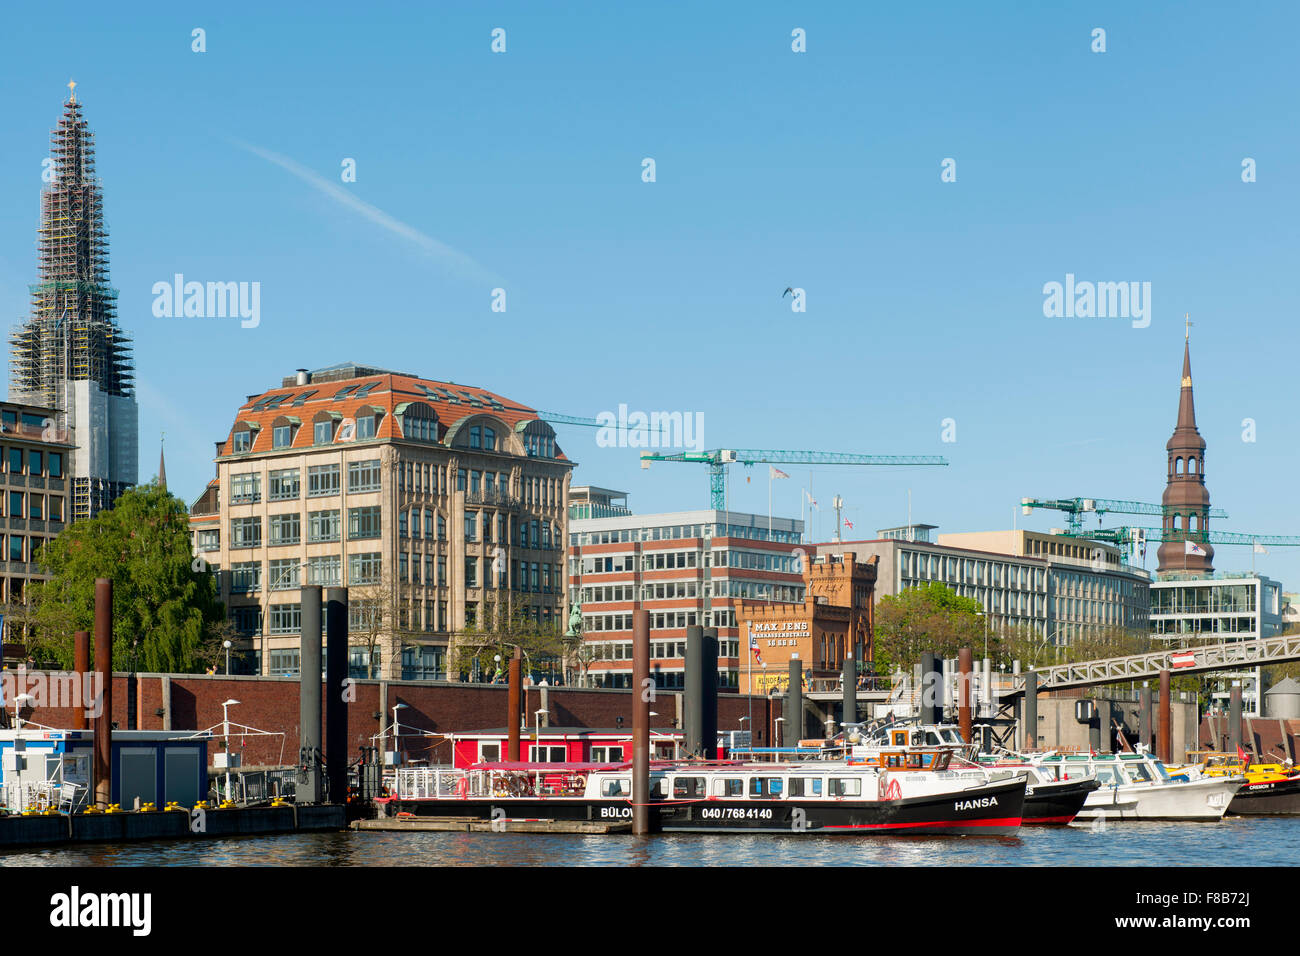 Deutschland, Amburgo, Zollkanal, Hafenrundfahrtboote Foto Stock